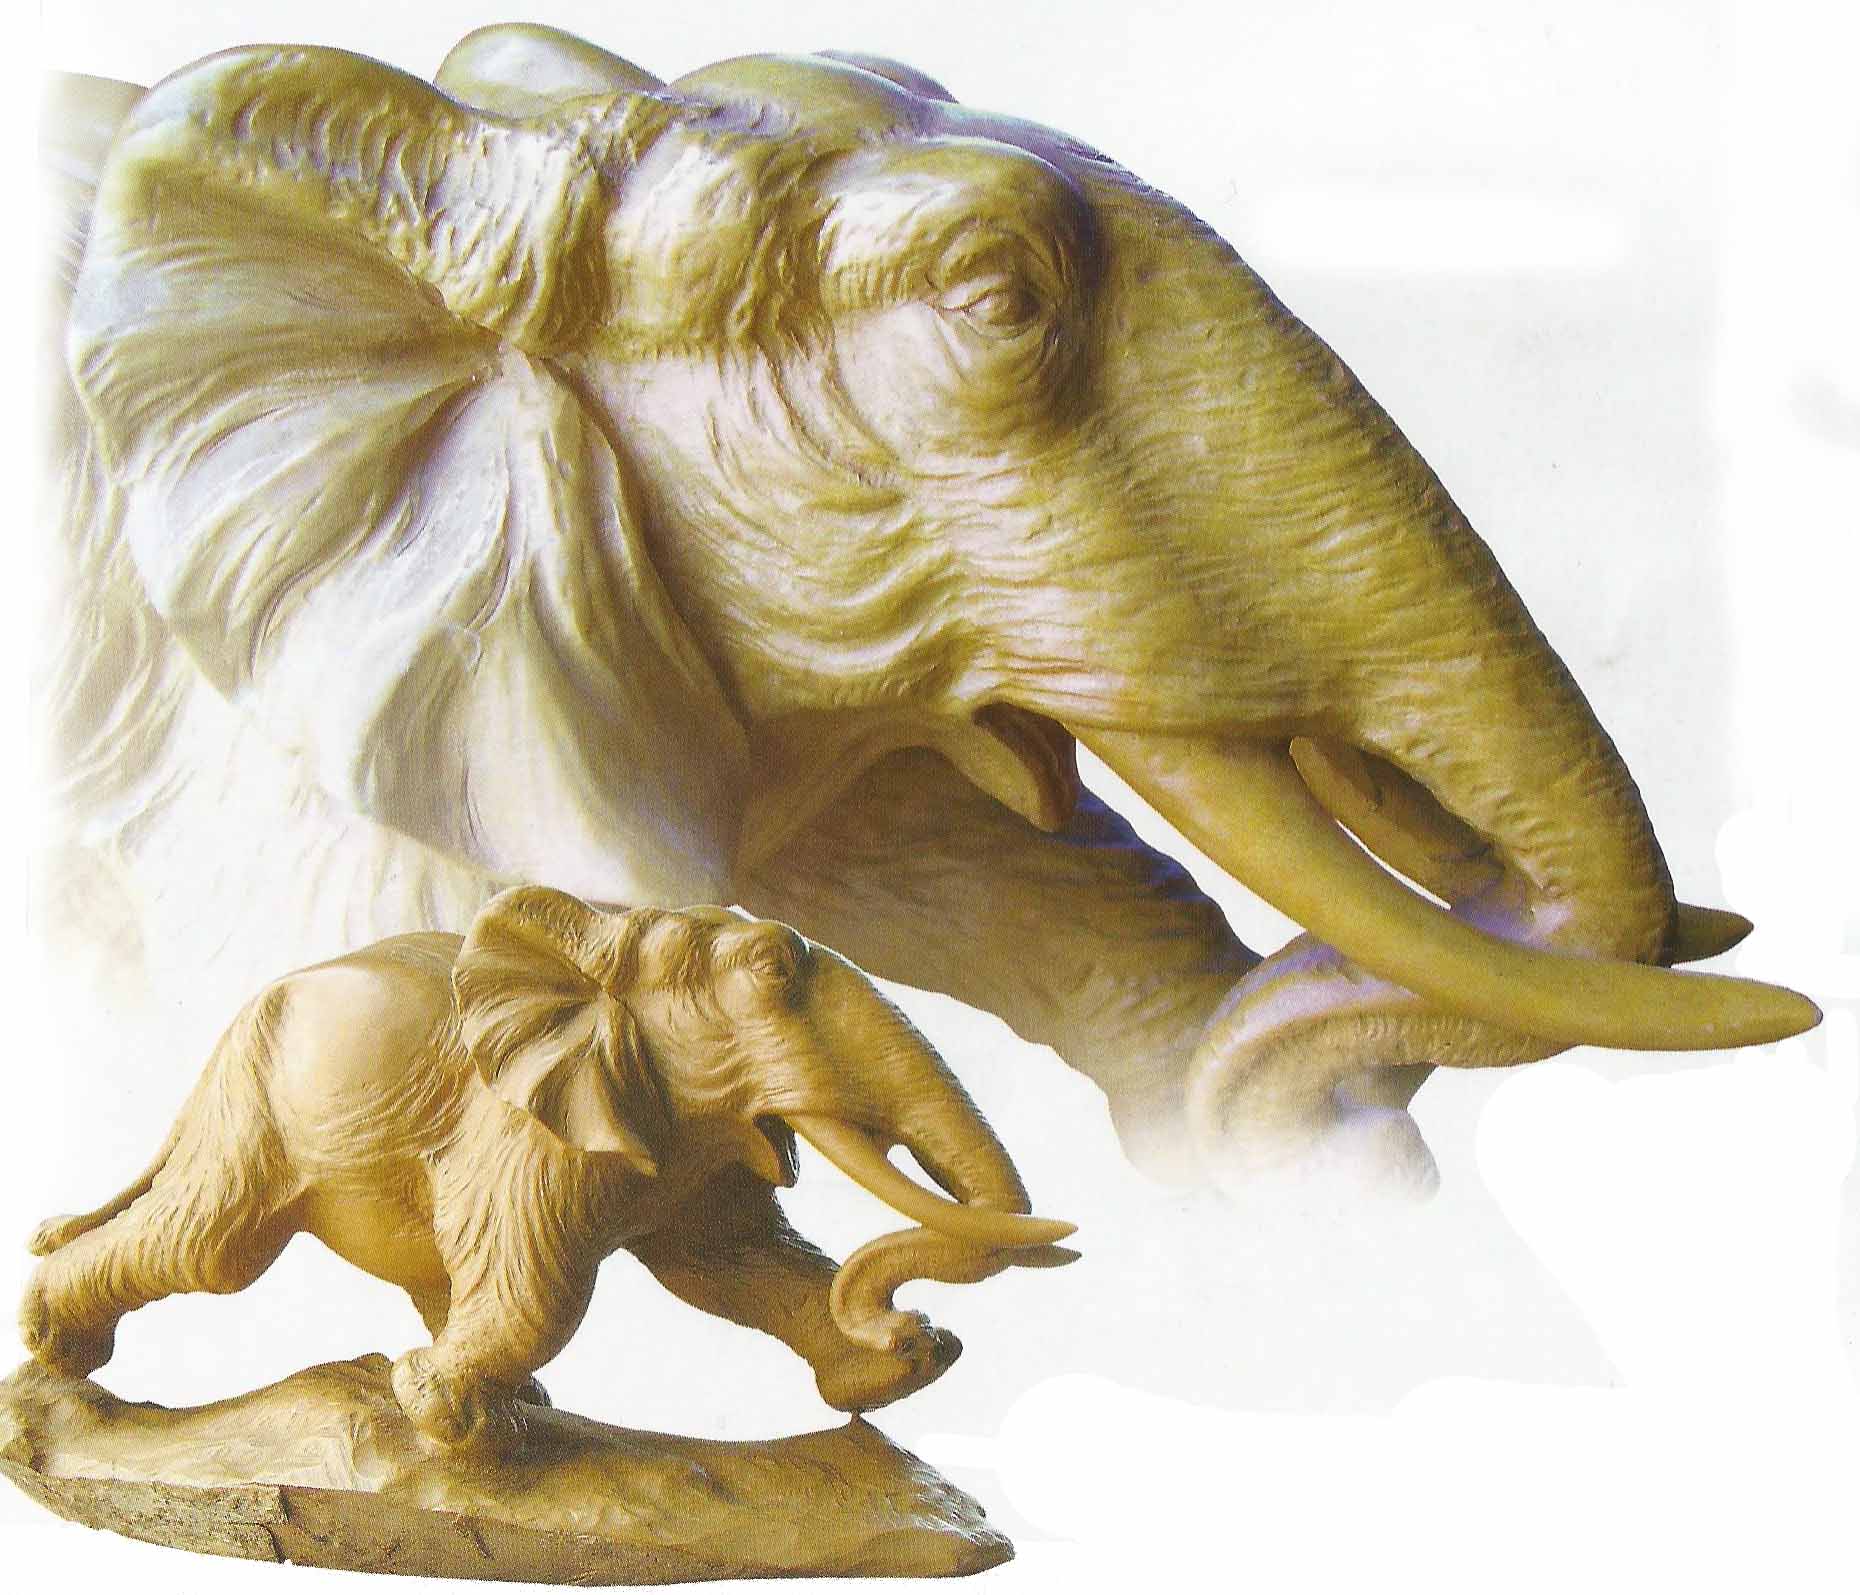 大象 木雕大象 吉祥动物 木雕工艺品 家居摆设 木象 象-阿里巴巴